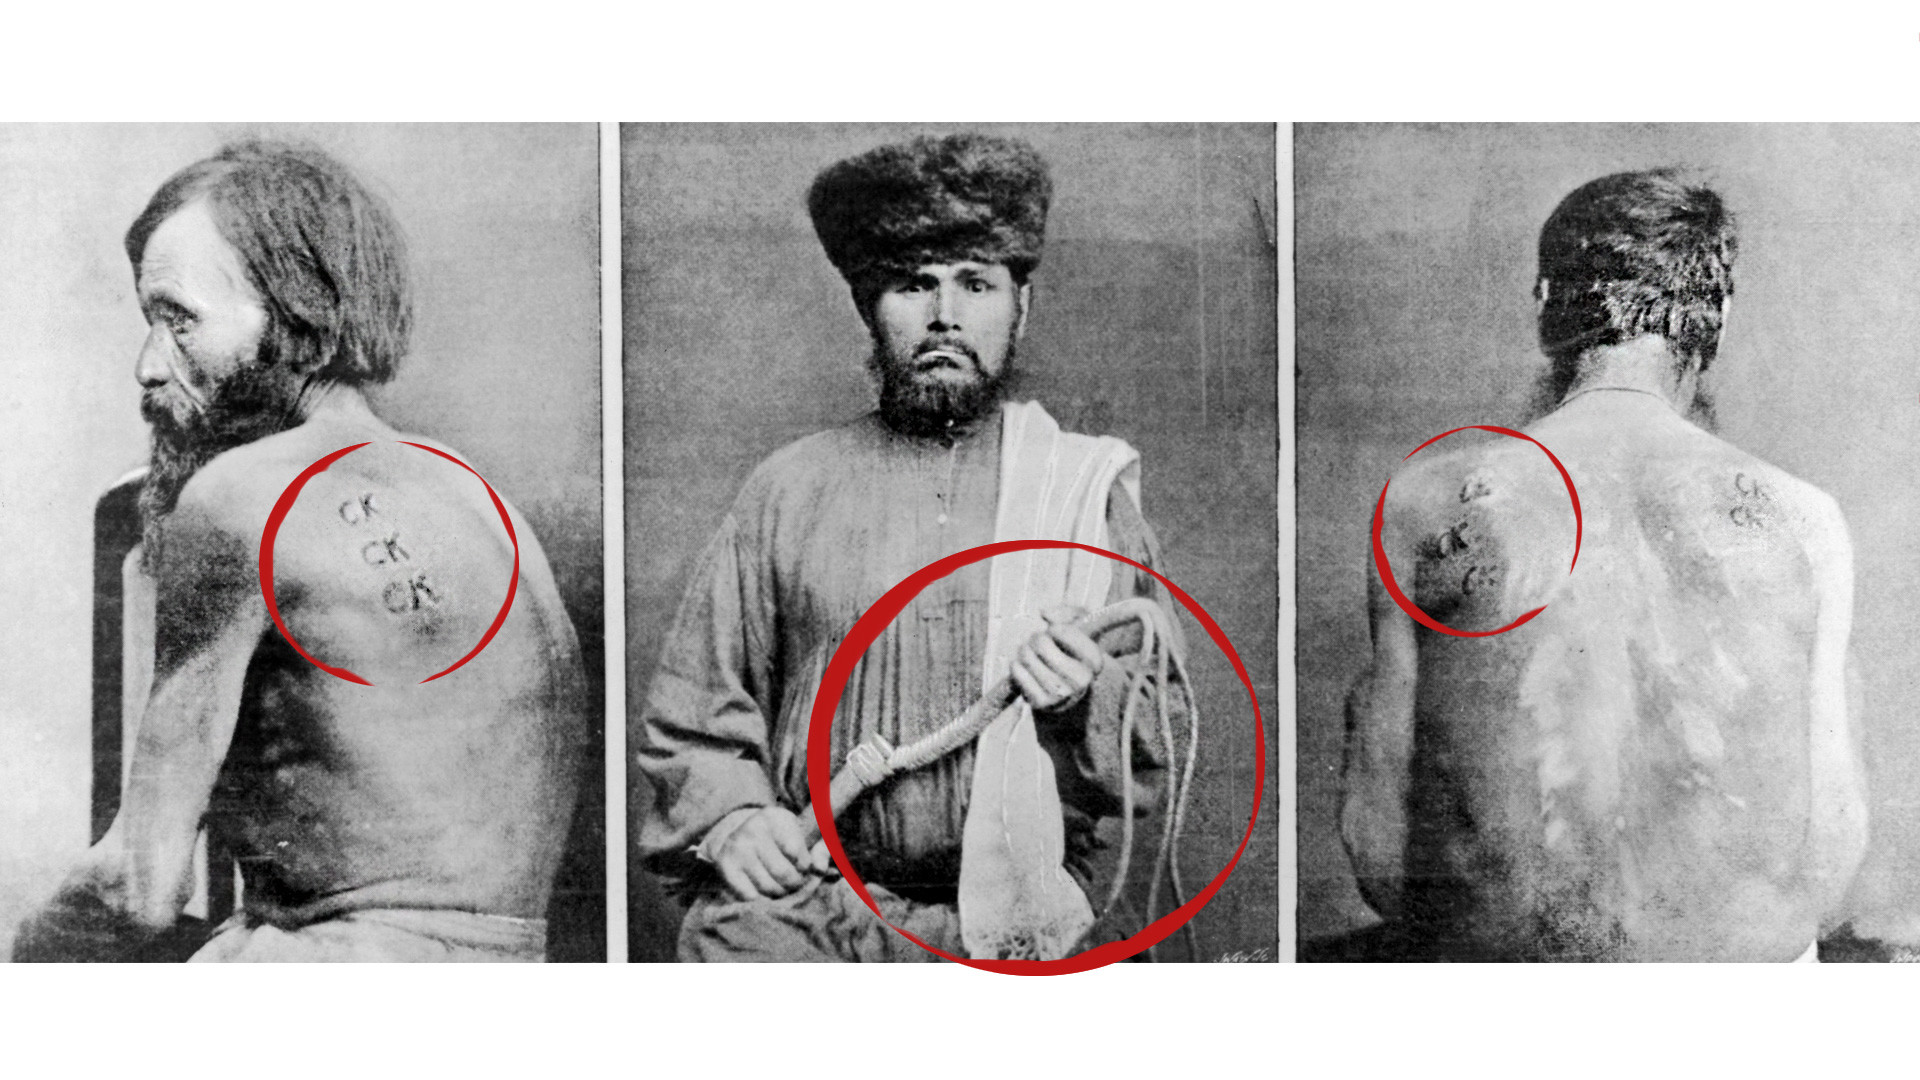 De gauche à droite : un forçat sibérien marqué des lettres « SK » pour avoir tenté de s'évader, un bourreau et un prisonnier blessé par un fouet, vers 1860.